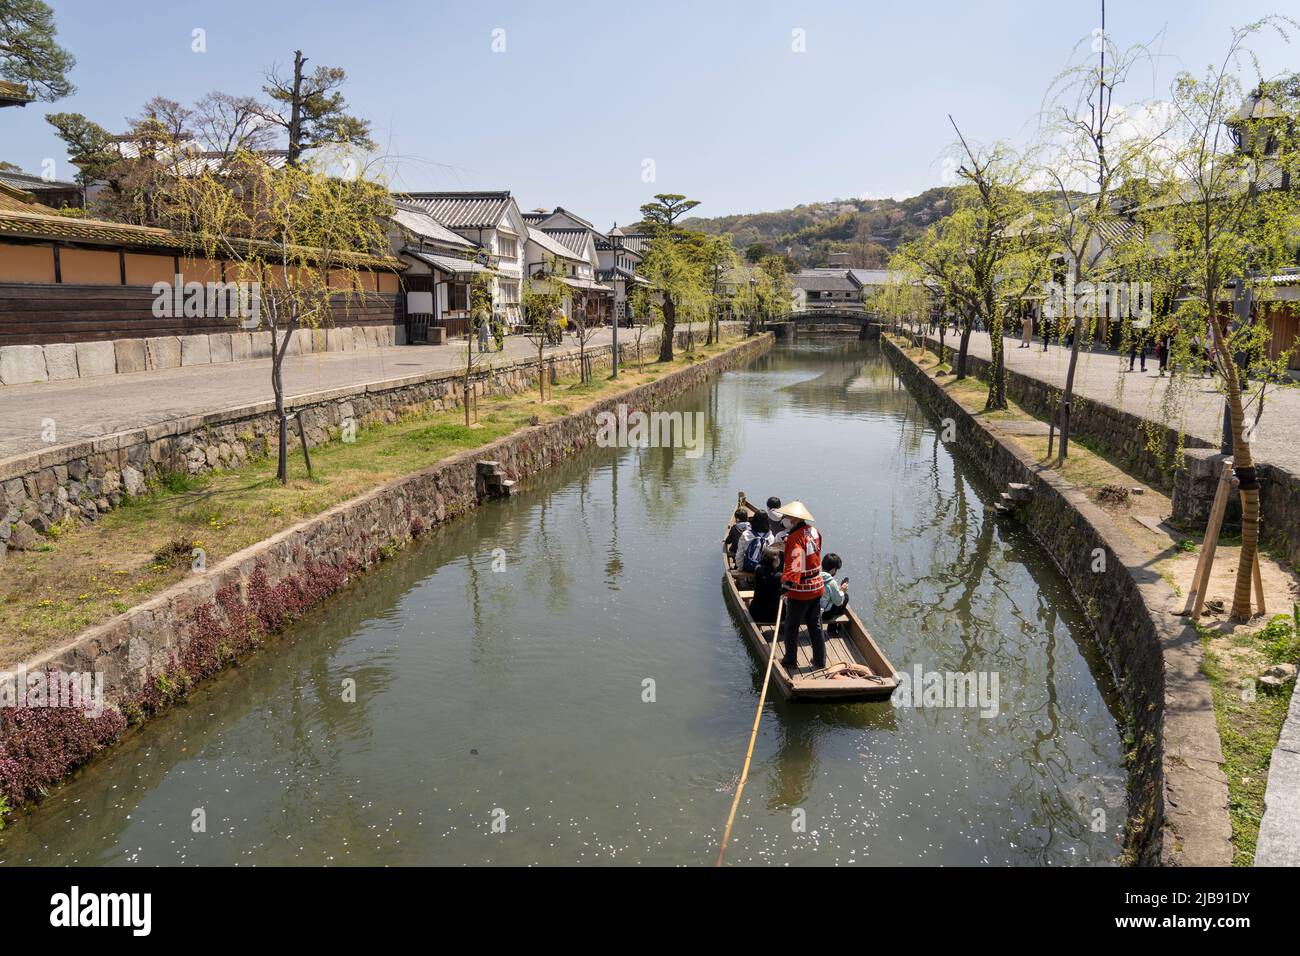 Tourists on a boat ride on the Kurashiki River, Kurashiki Bikan Historical Area, Kurashiki, Okayama Prefecture, Western Honshu, Japan. Stock Photo